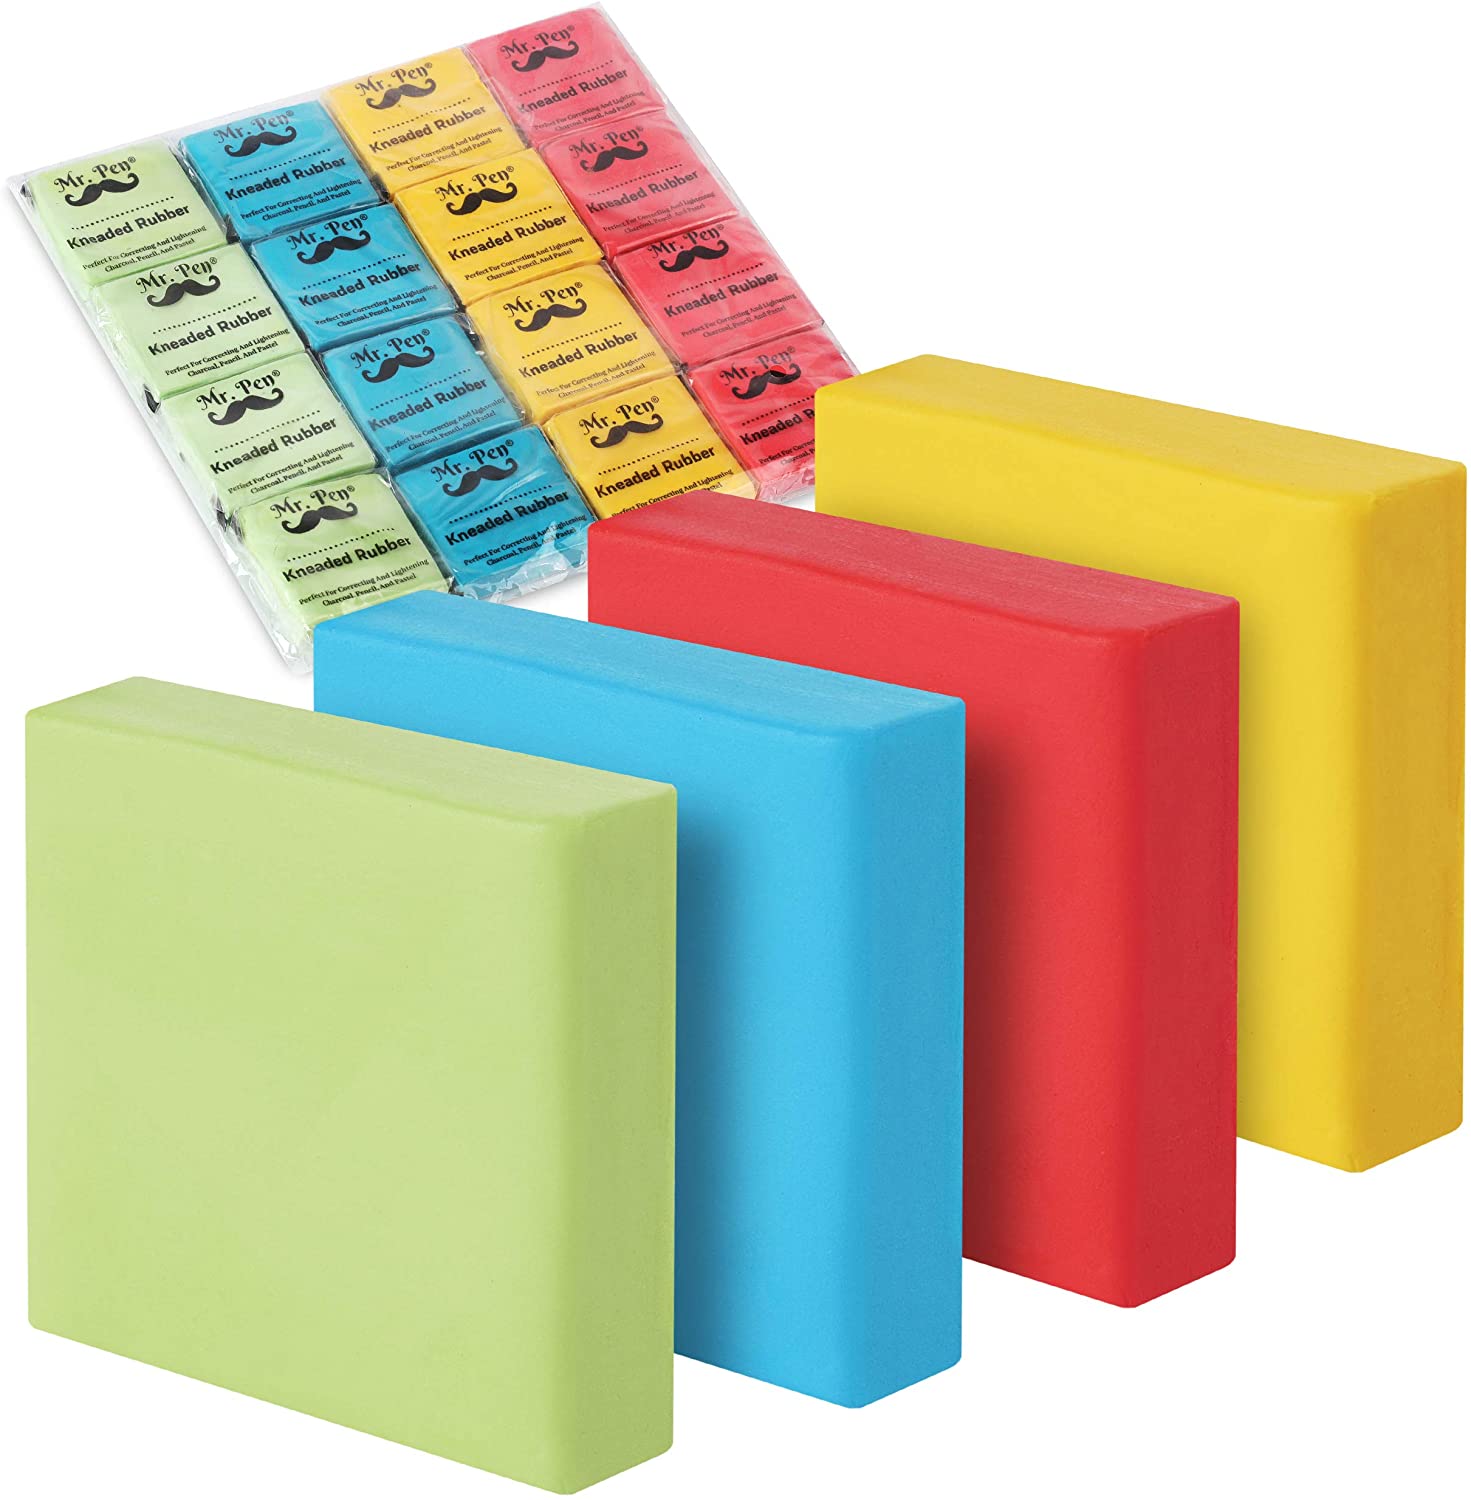 Mr. Pen- Kneaded Eraser, Erasers for Drawing, 16 Pack, Artist Eraser